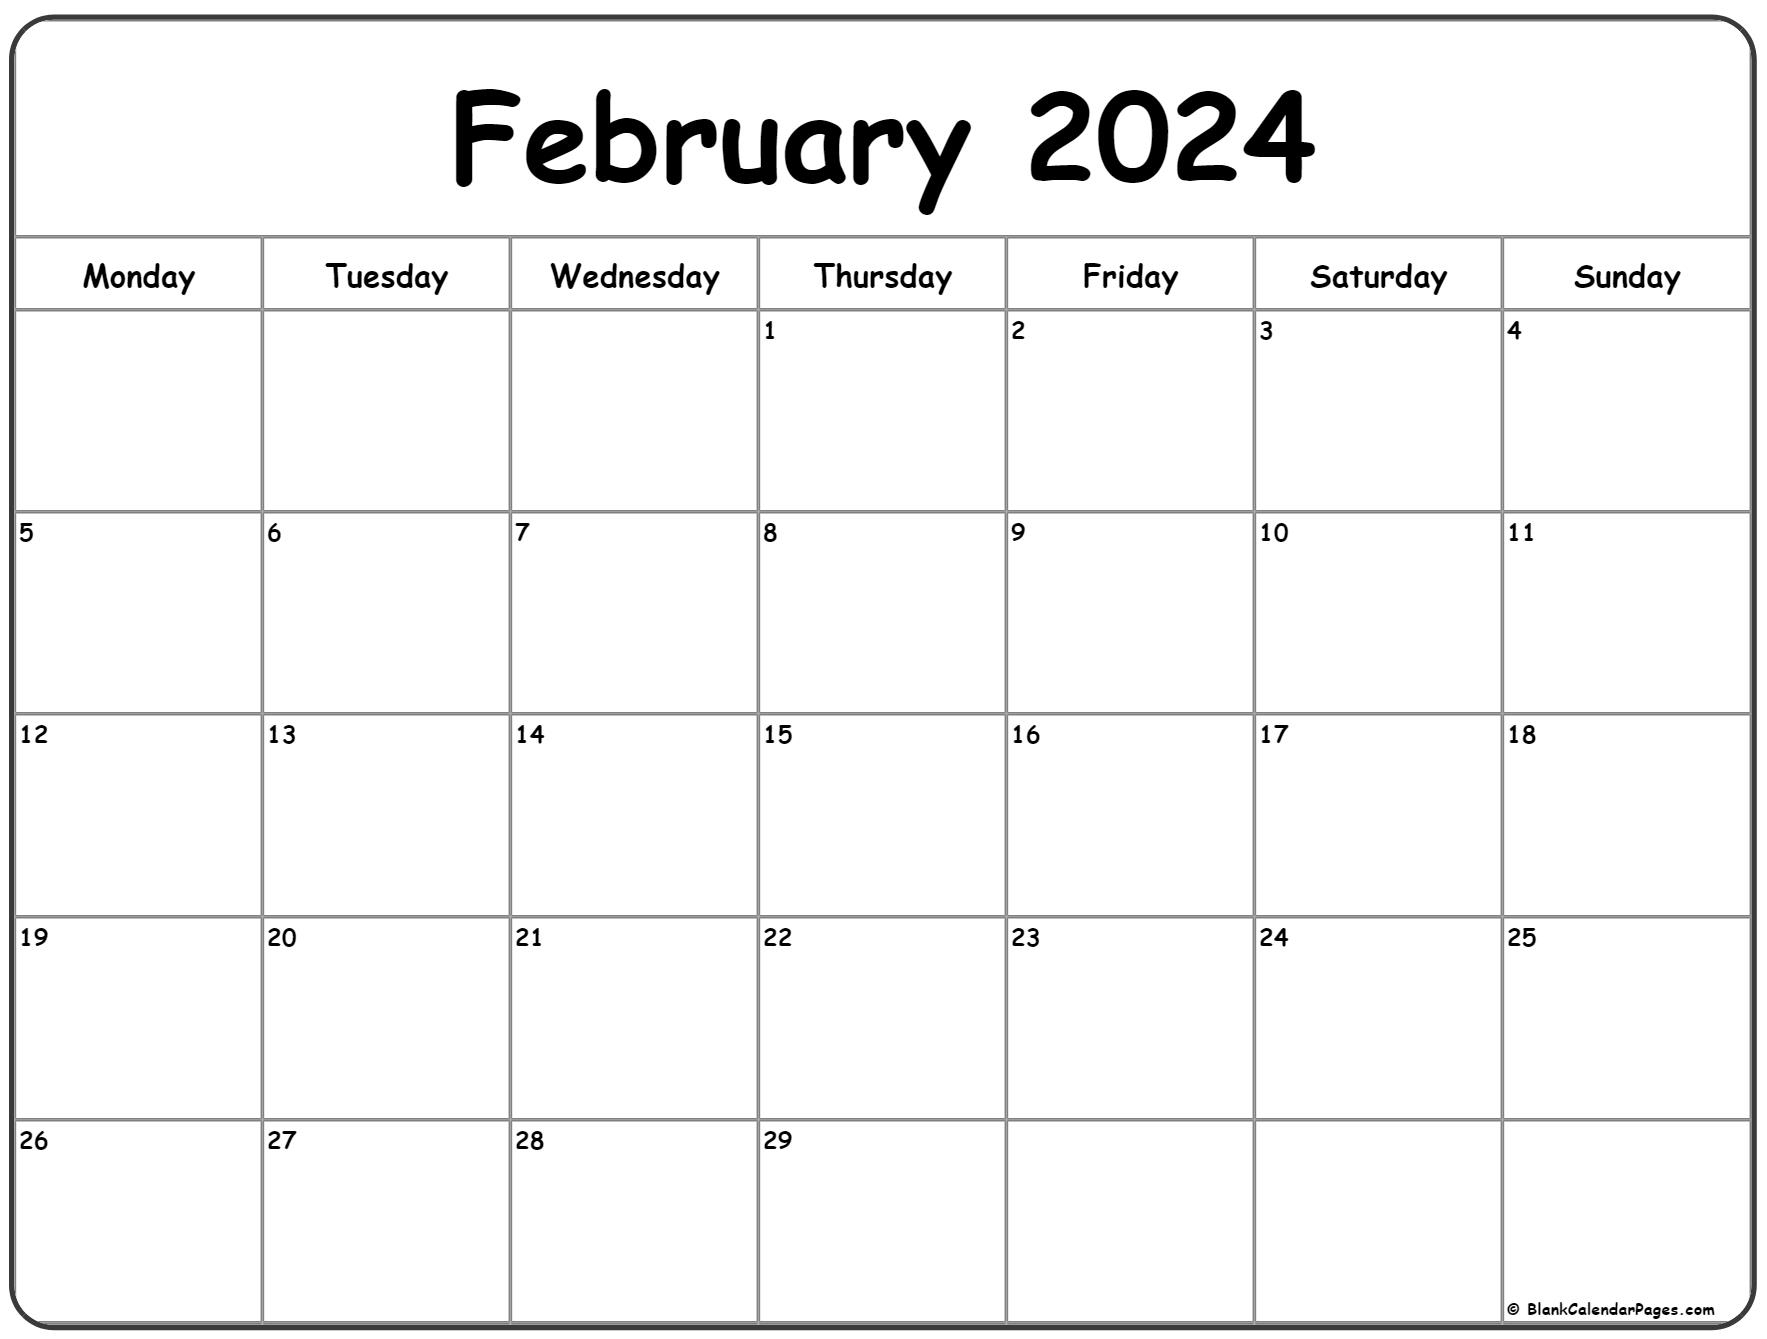 February 2024 Monday Calendar | Monday To Sunday for Feburary 2024 Calendar Printable